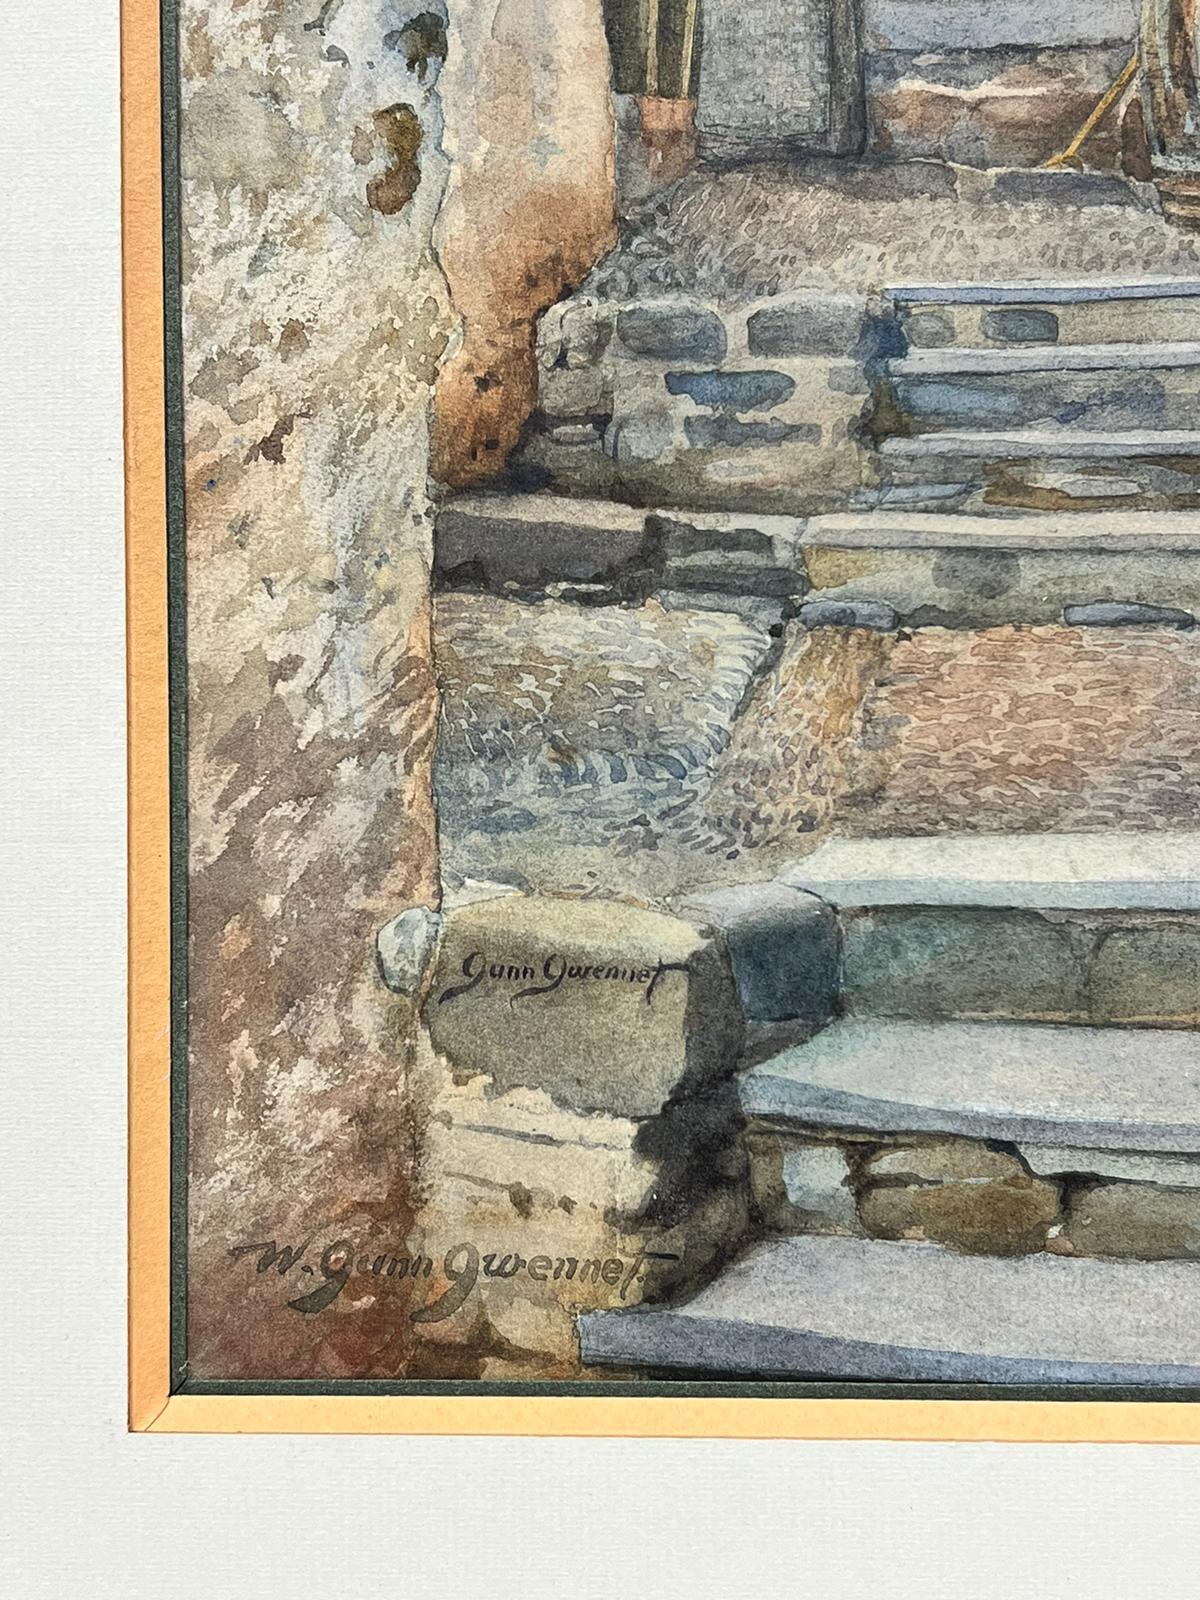 Die Cottage-Treppe
Von Gunn Gwennet (britisch, Anfang 1900er Jahre)
signierte Aquarellmalerei auf Papier in einem Rahmen.
Gerahmt: 21 x 18 Zoll
Bild: 14 x 9,75 Zoll
Provenienz: Privatsammlung, England 
Zustand: insgesamt sehr gut